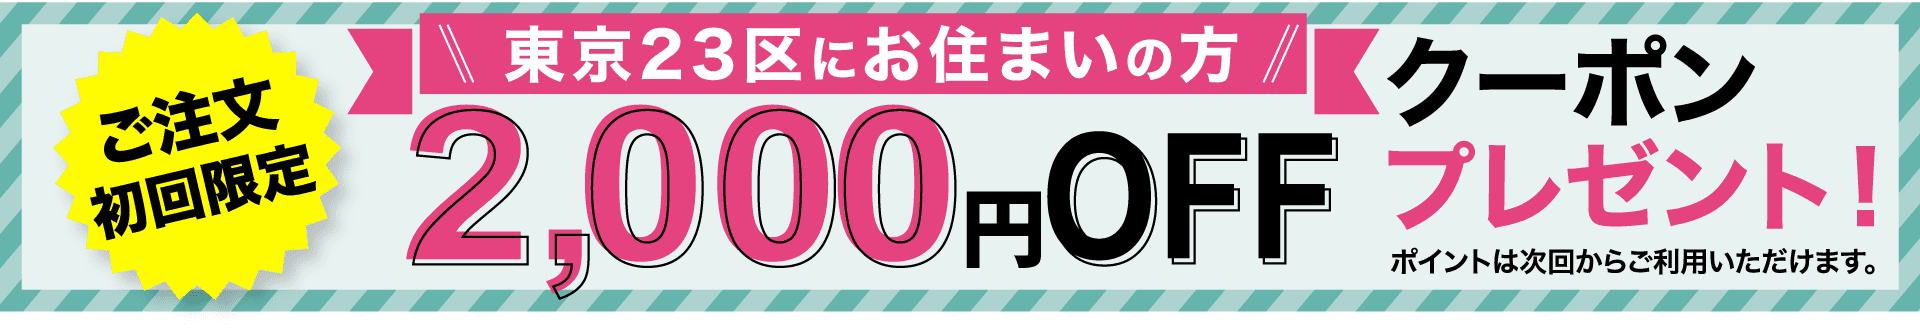 ご注文初回限定 東京23区にお住まいの方3,000円OFFクーポンプレゼント！ ポイントは次回からご利用いただけます。